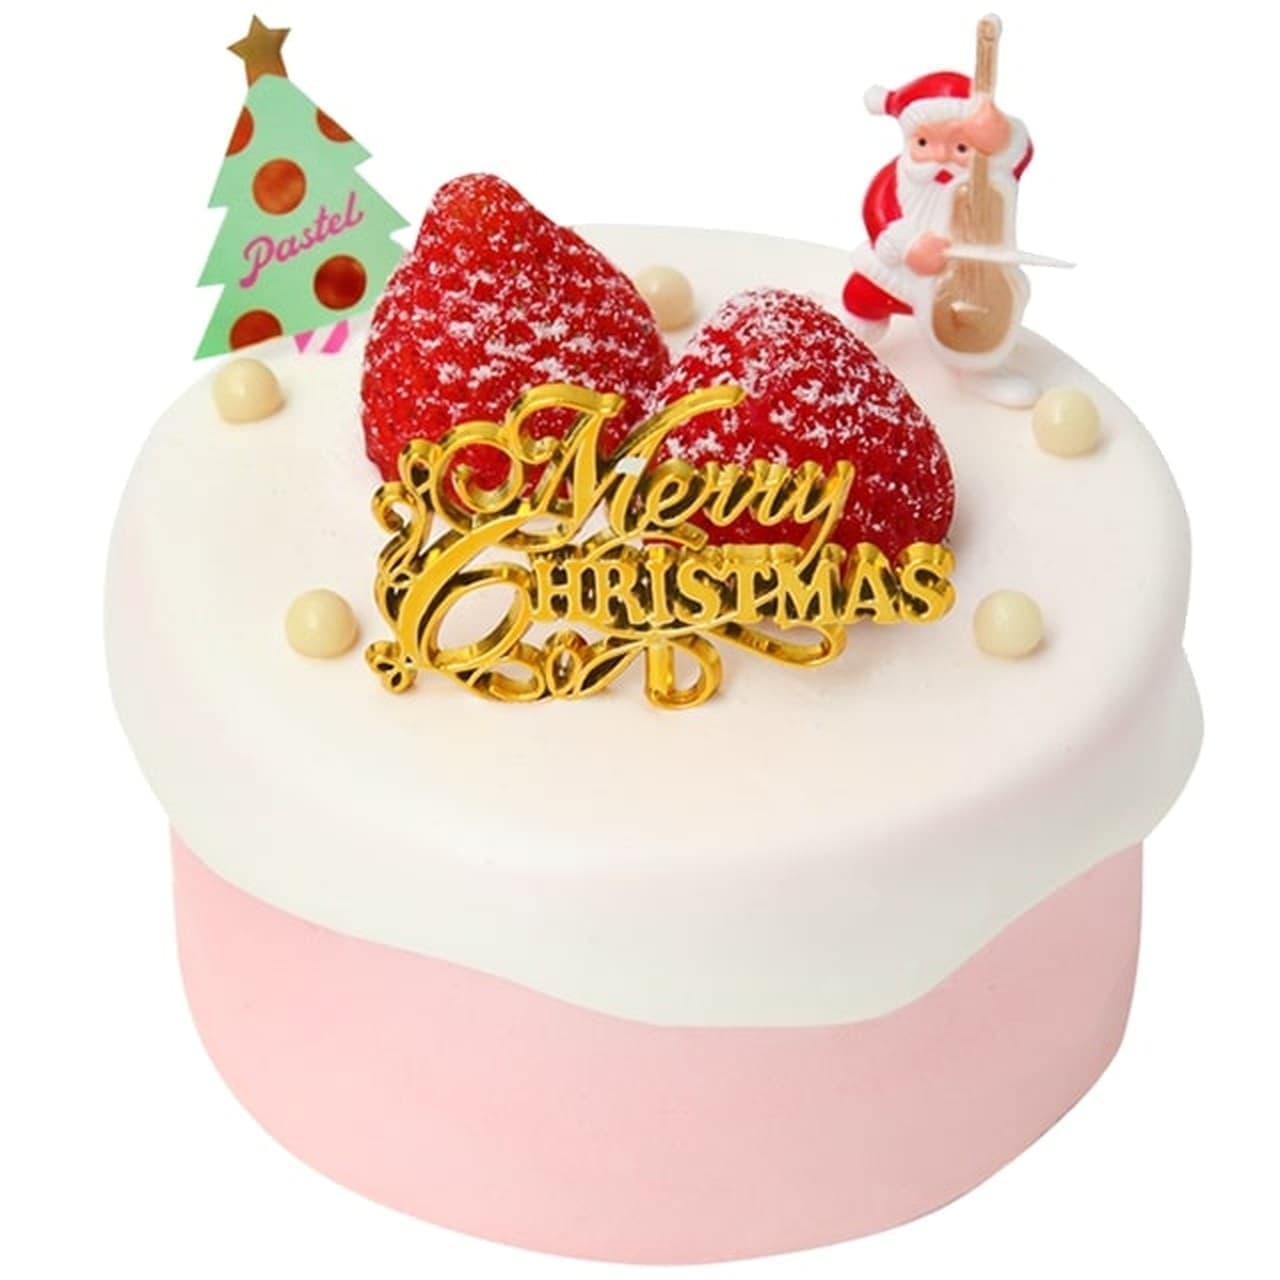 Pastel パステル のクリスマスケーキ7種をまとめてチェック 家族とシェアする5号から ひとりでも楽しめる3号サイズなど えん食べ